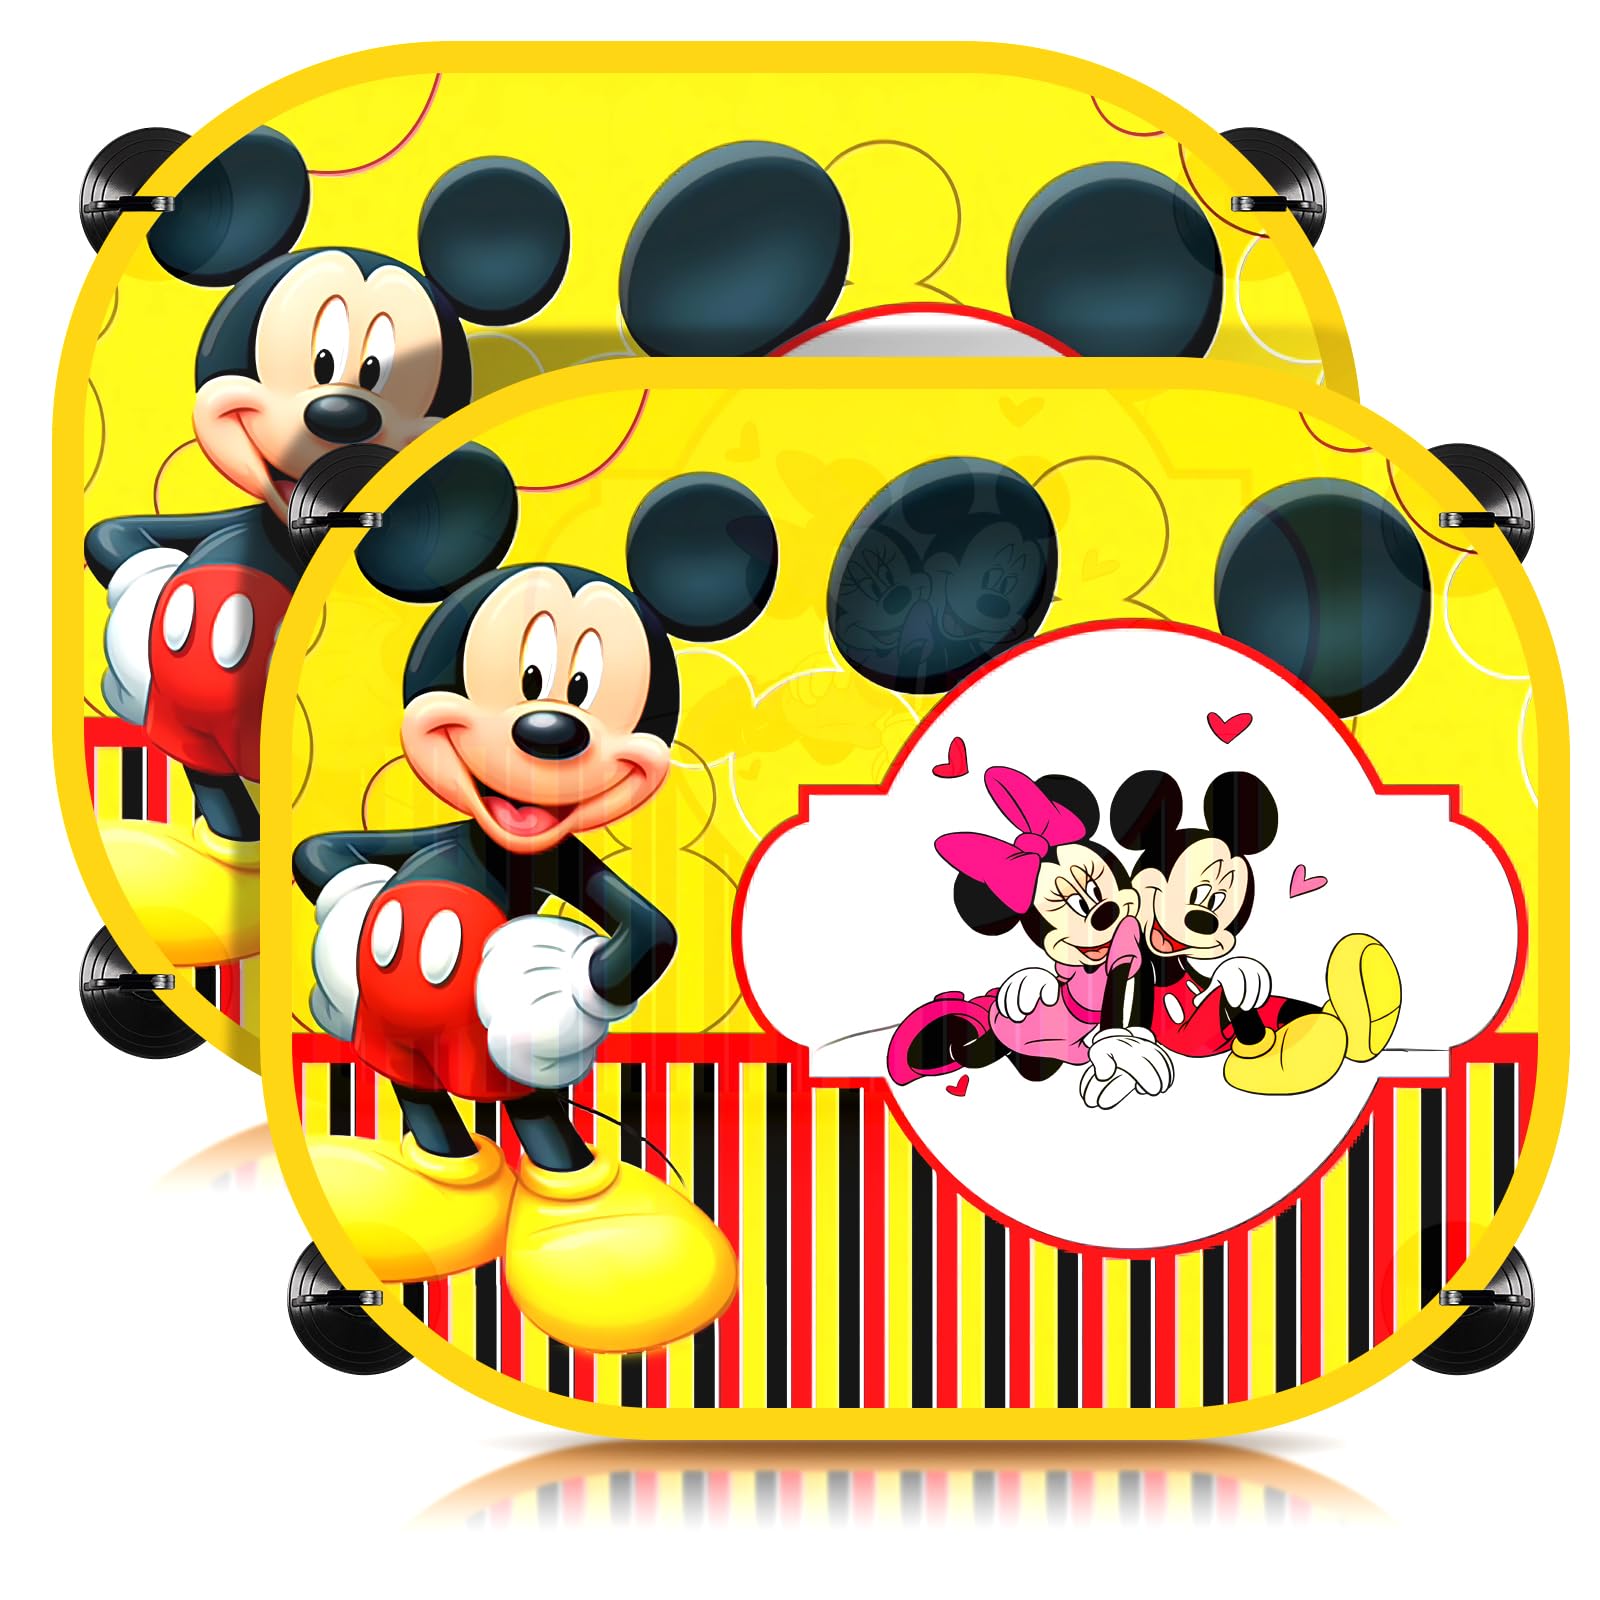 Sonnenschutz Auto Mickey, 2 Pcs Auto Sonnenschutz Kinder Mickey, Sonnenblende Auto Kinder, Auto Sonnenblende Universal Mickey von VOENCSU